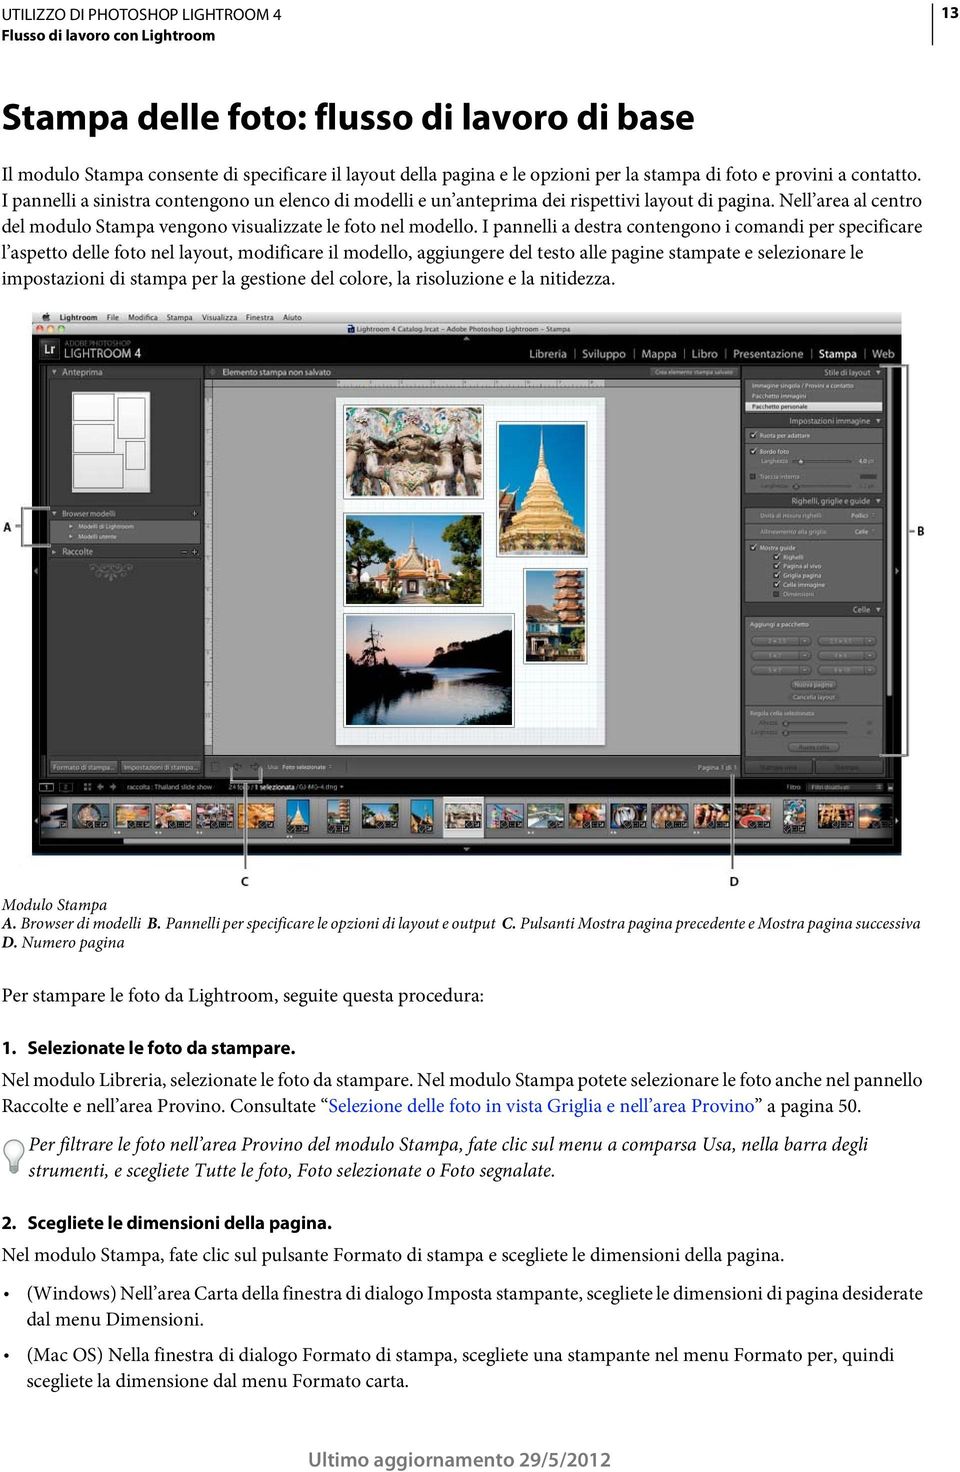 I pannelli a destra contengono i comandi per specificare l aspetto delle foto nel layout, modificare il modello, aggiungere del testo alle pagine stampate e selezionare le impostazioni di stampa per